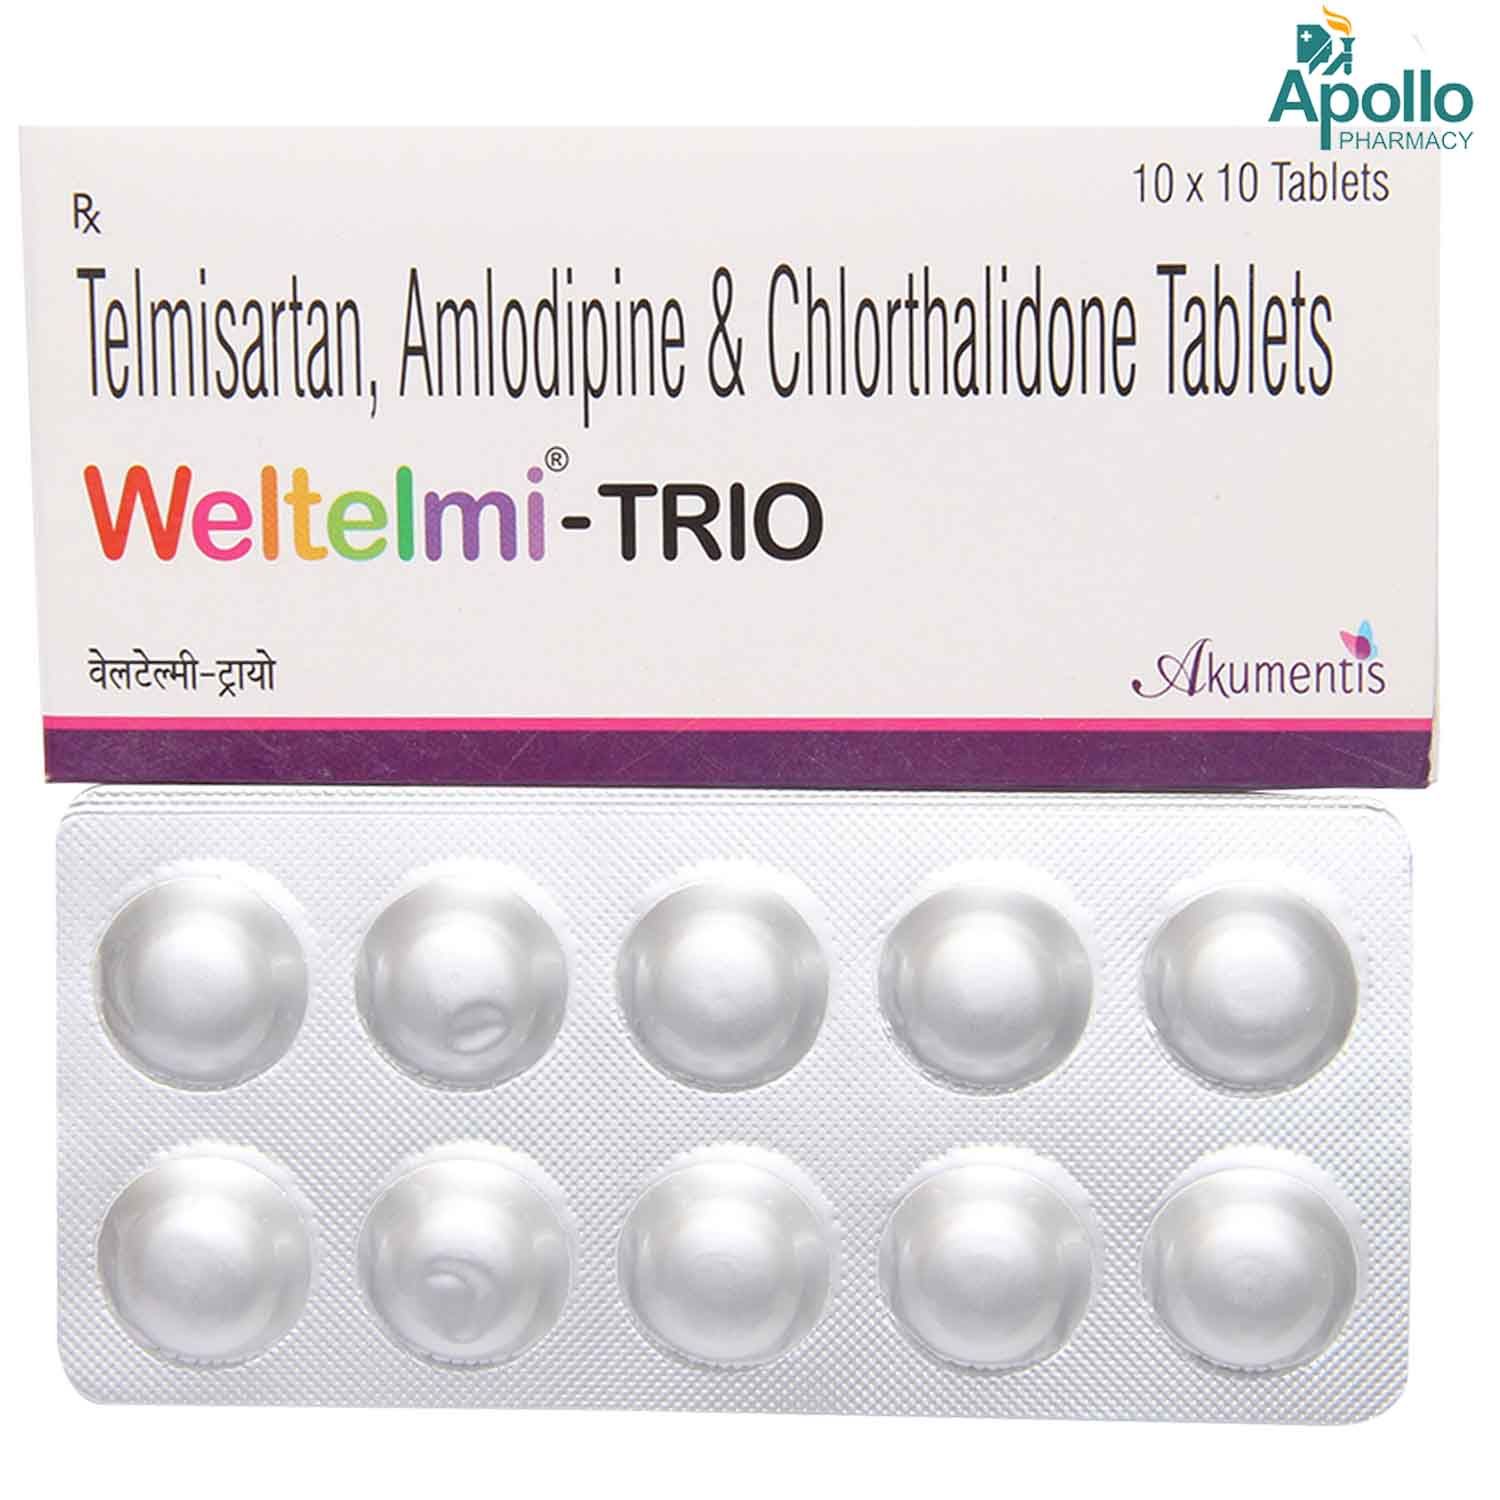 Weltelmi-Trio Tablet 10's, Pack of 10 TABLETS